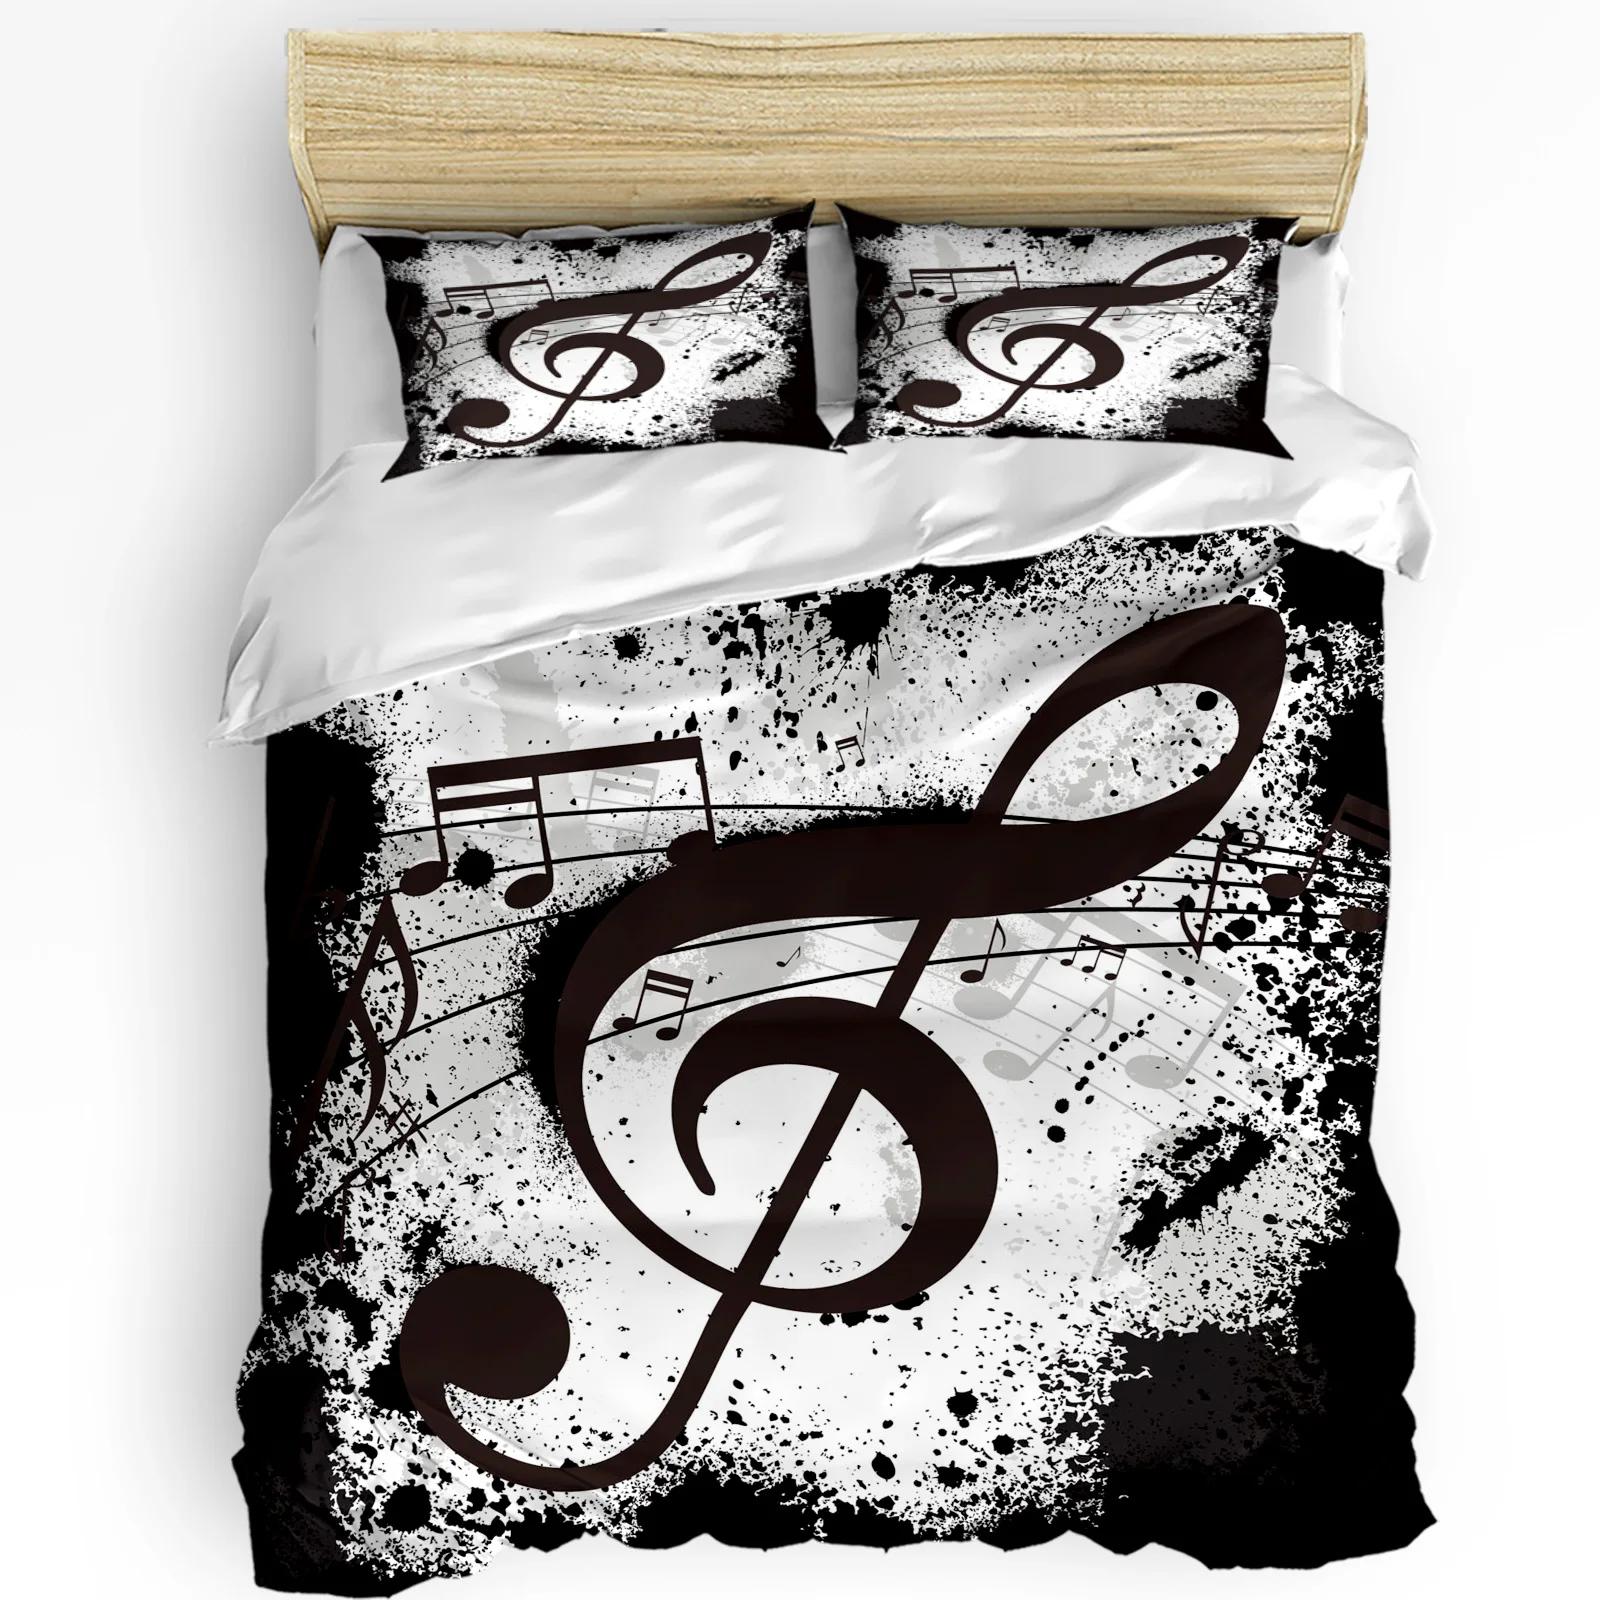 Music Notes Dot Drop Quaver Black Splash Ink Art Bedding Set 3pcs Duvet Cover Pillowcase Quilt Cover Double Bed Set